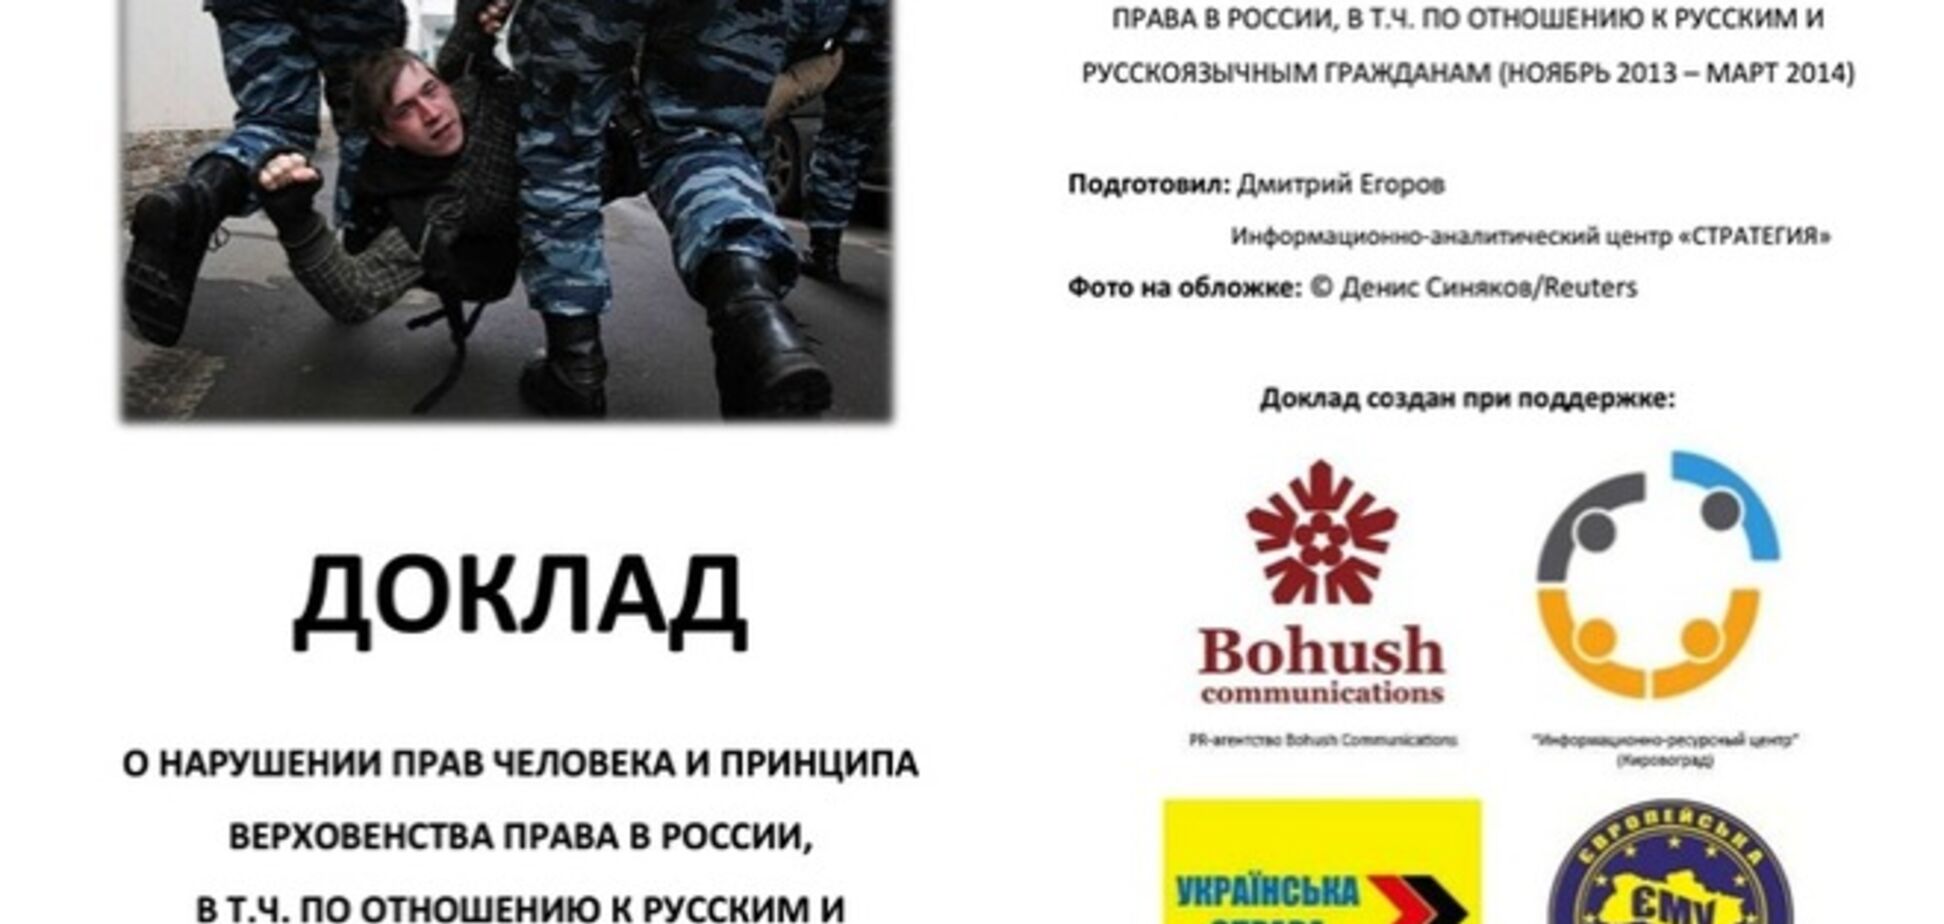 Порушення прав людини в Росії. Прес-конференція в 'Обозревателе'